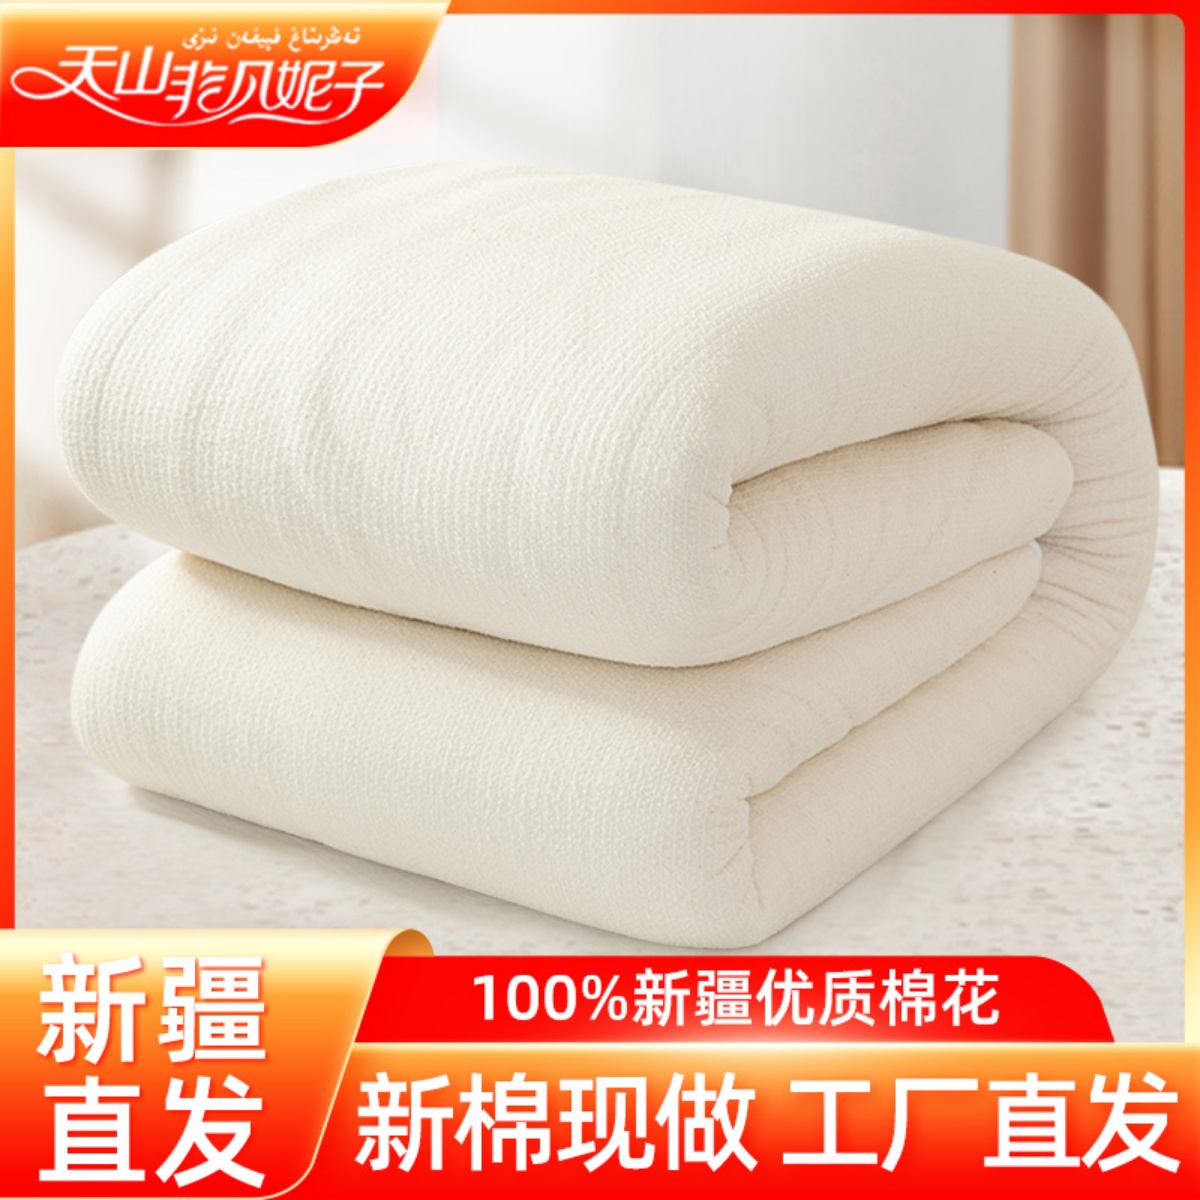 天山非凡妮子新疆棉被垫被100%全棉纯棉花被芯棉絮手工被子冬被 床上用品 棉花被 原图主图